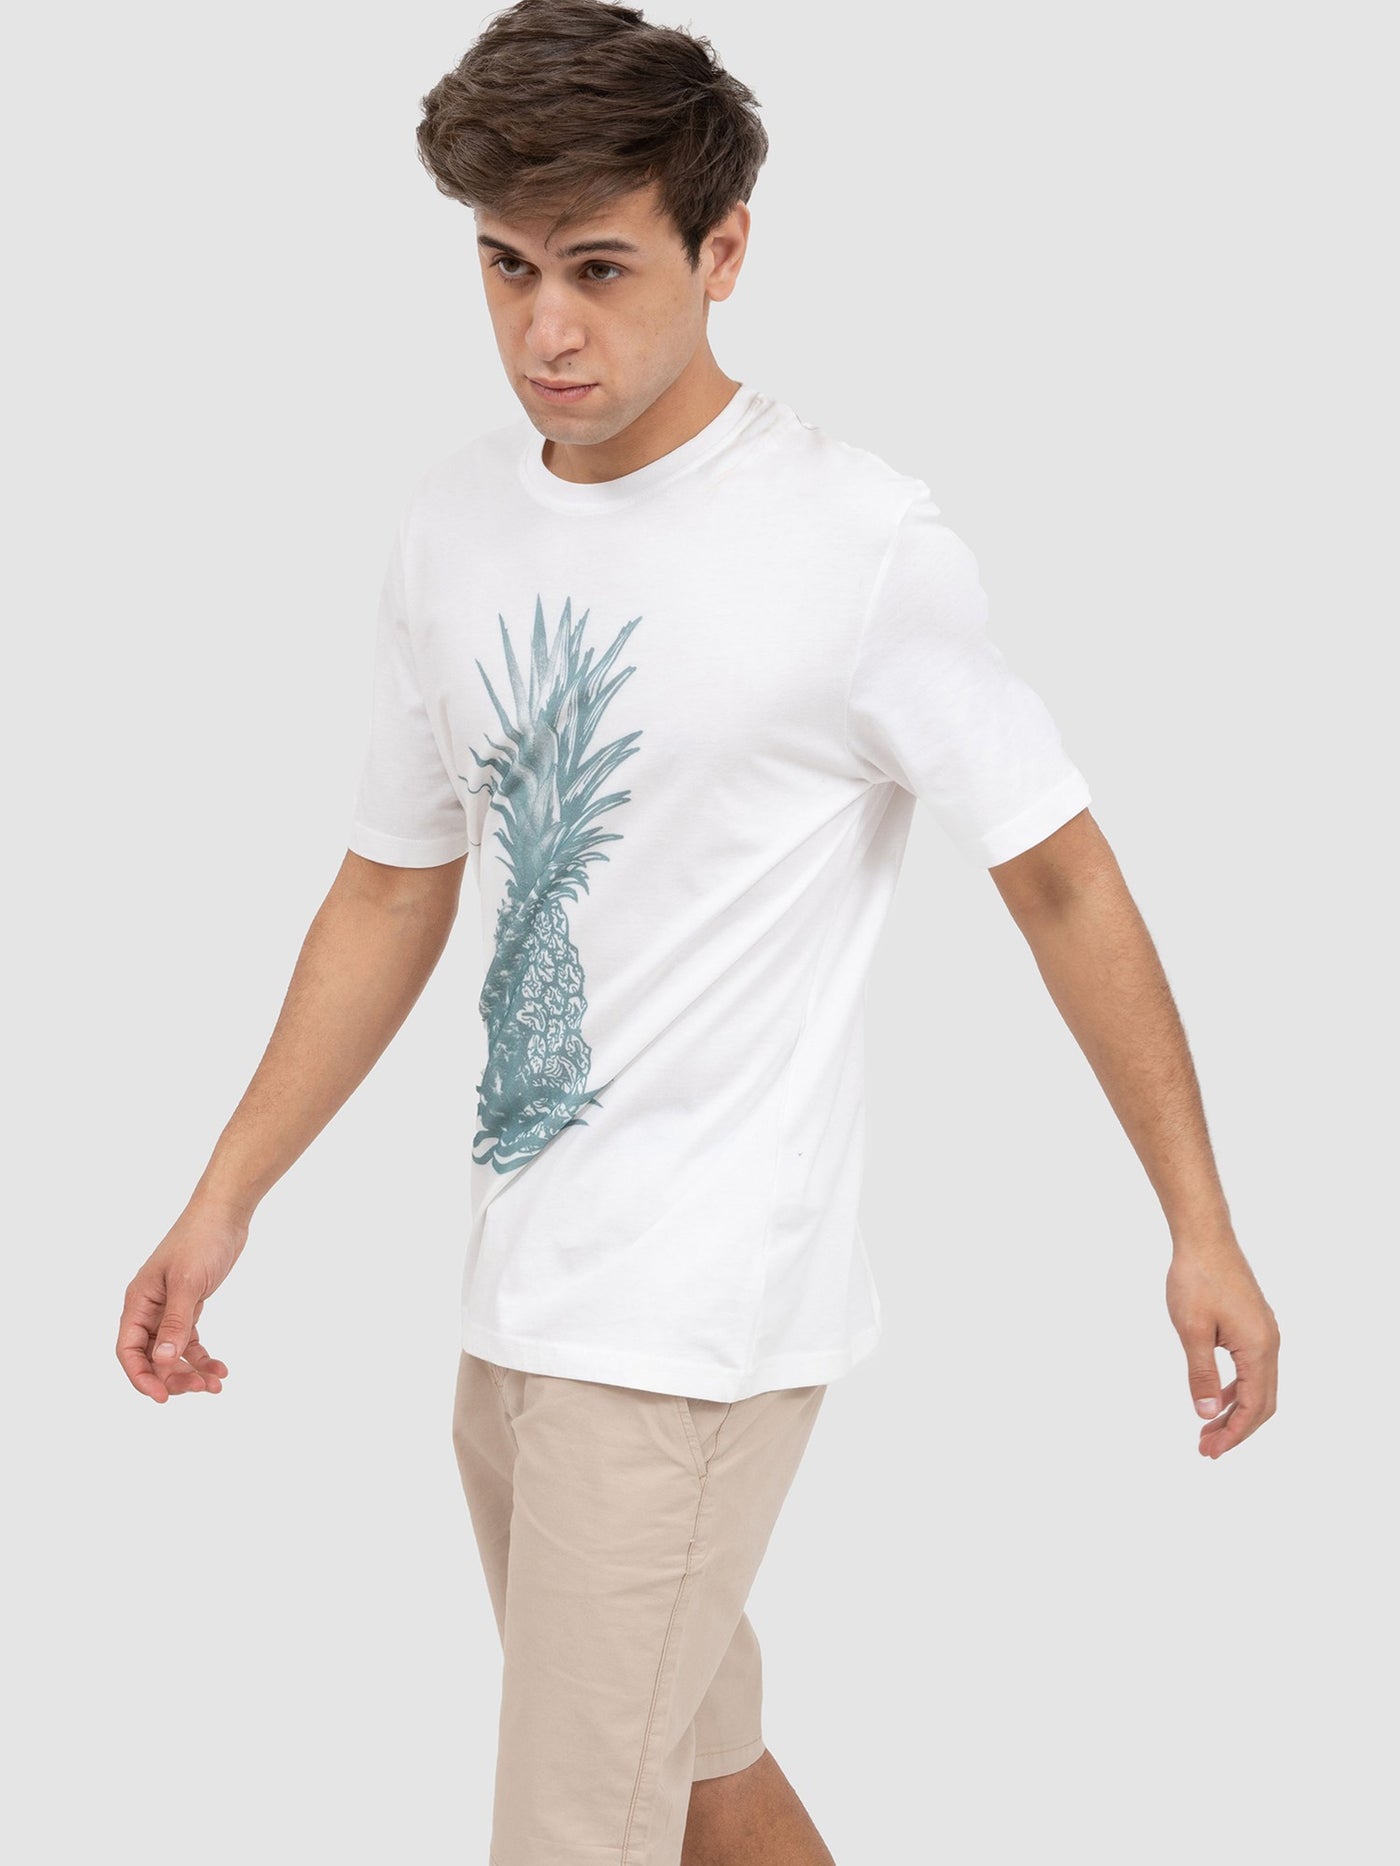 Premoda Mens Pineapple Front Print T-Shirt